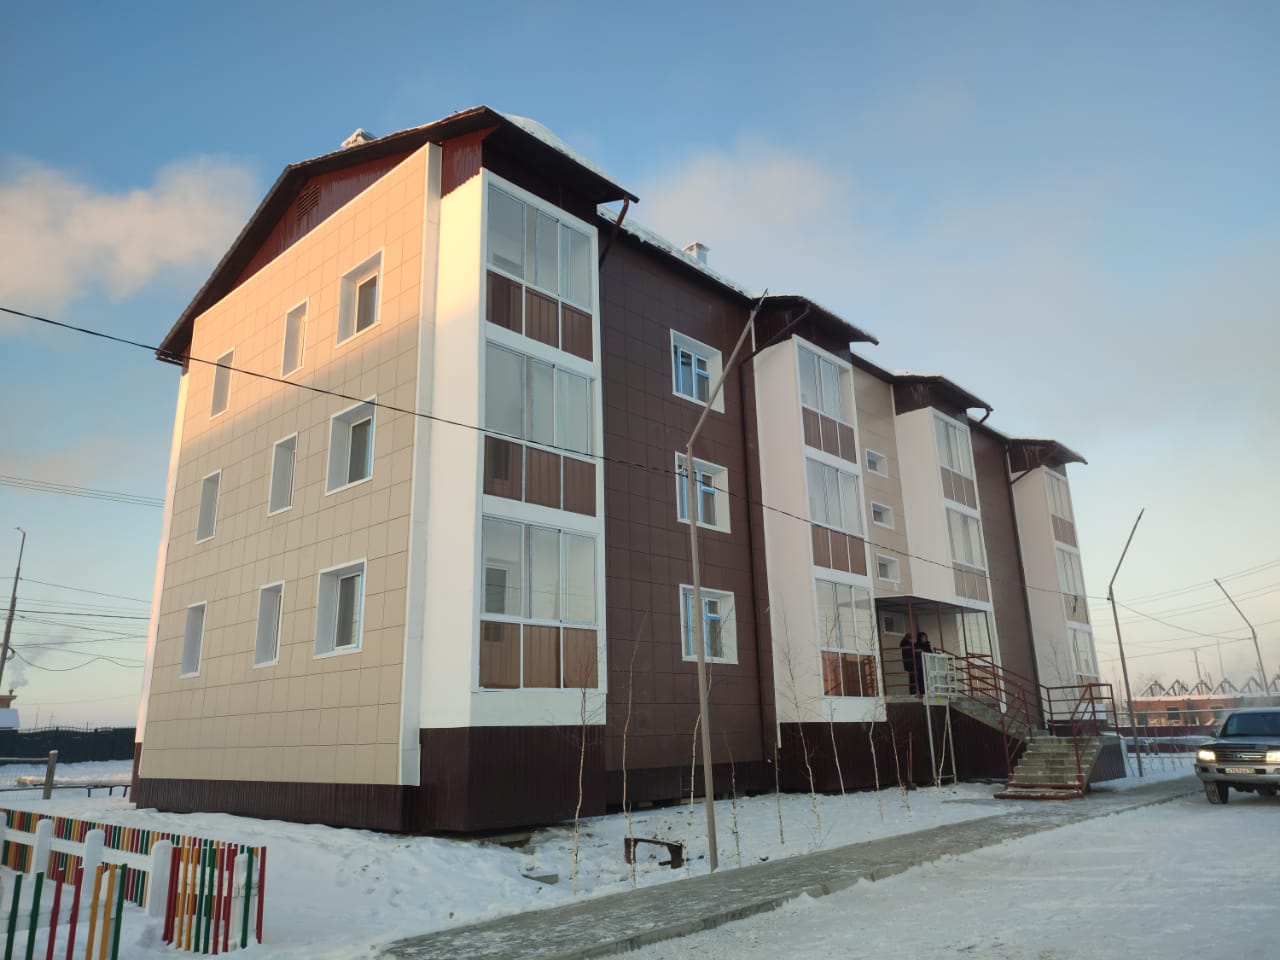 Многоквартирный дом ввели в селе Харбала 1-ая в Якутии